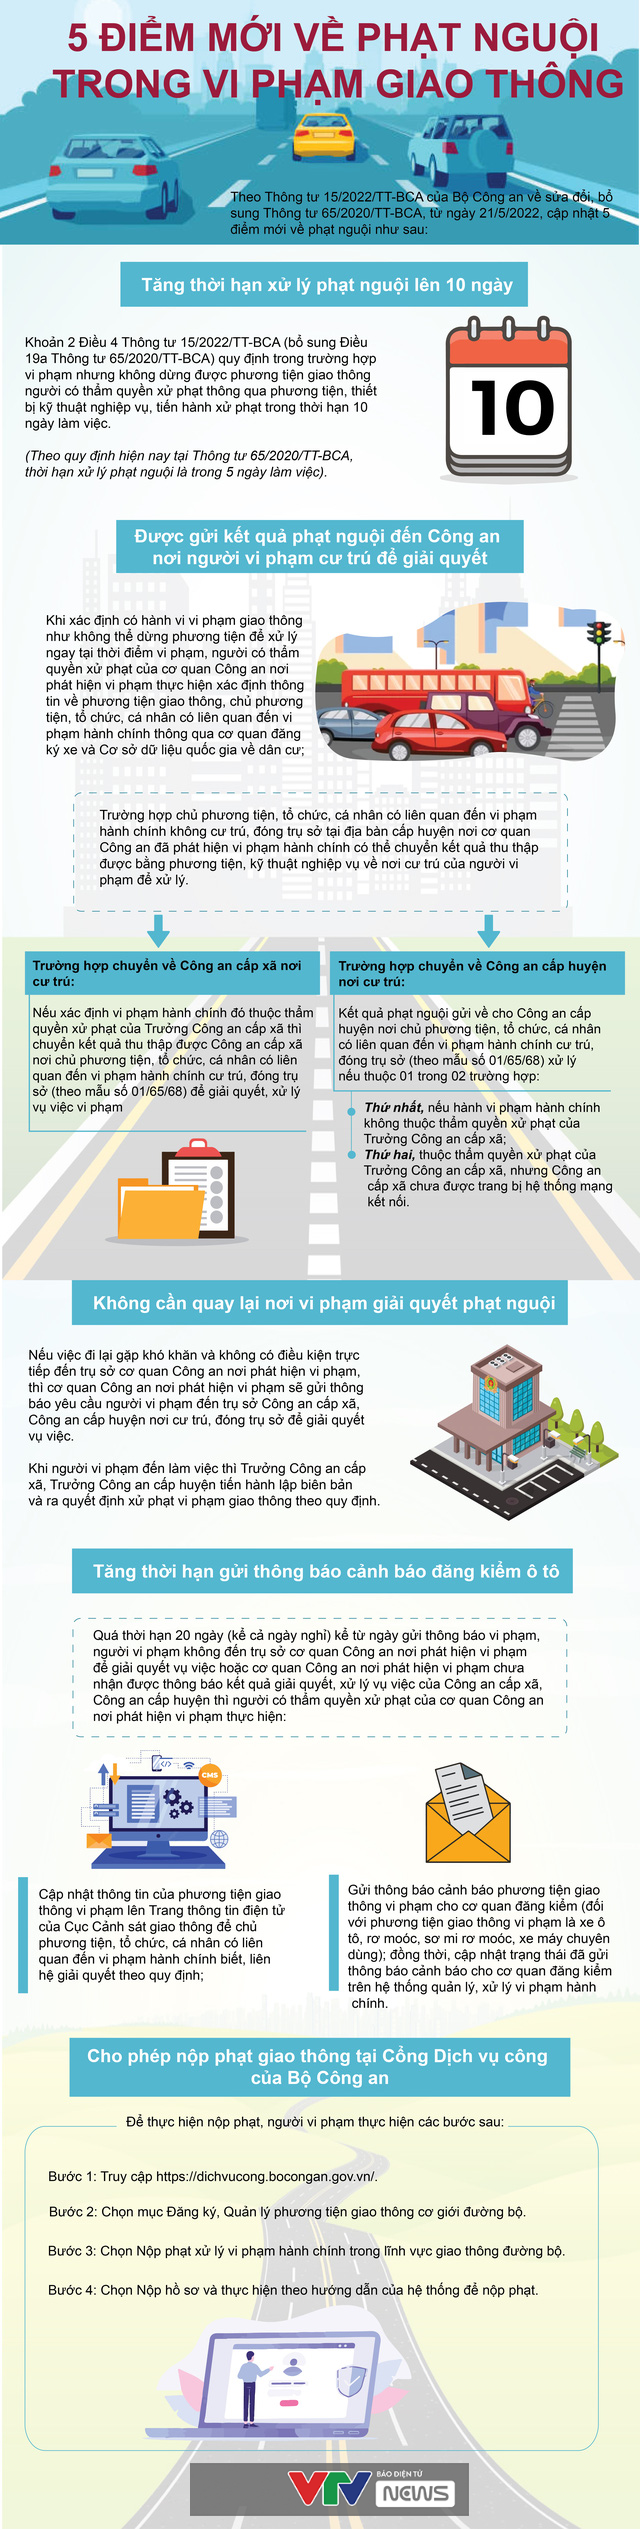 [Infographic] Những điểm mới về phạt nguội đối với người vi phạm giao thông - Ảnh 1.